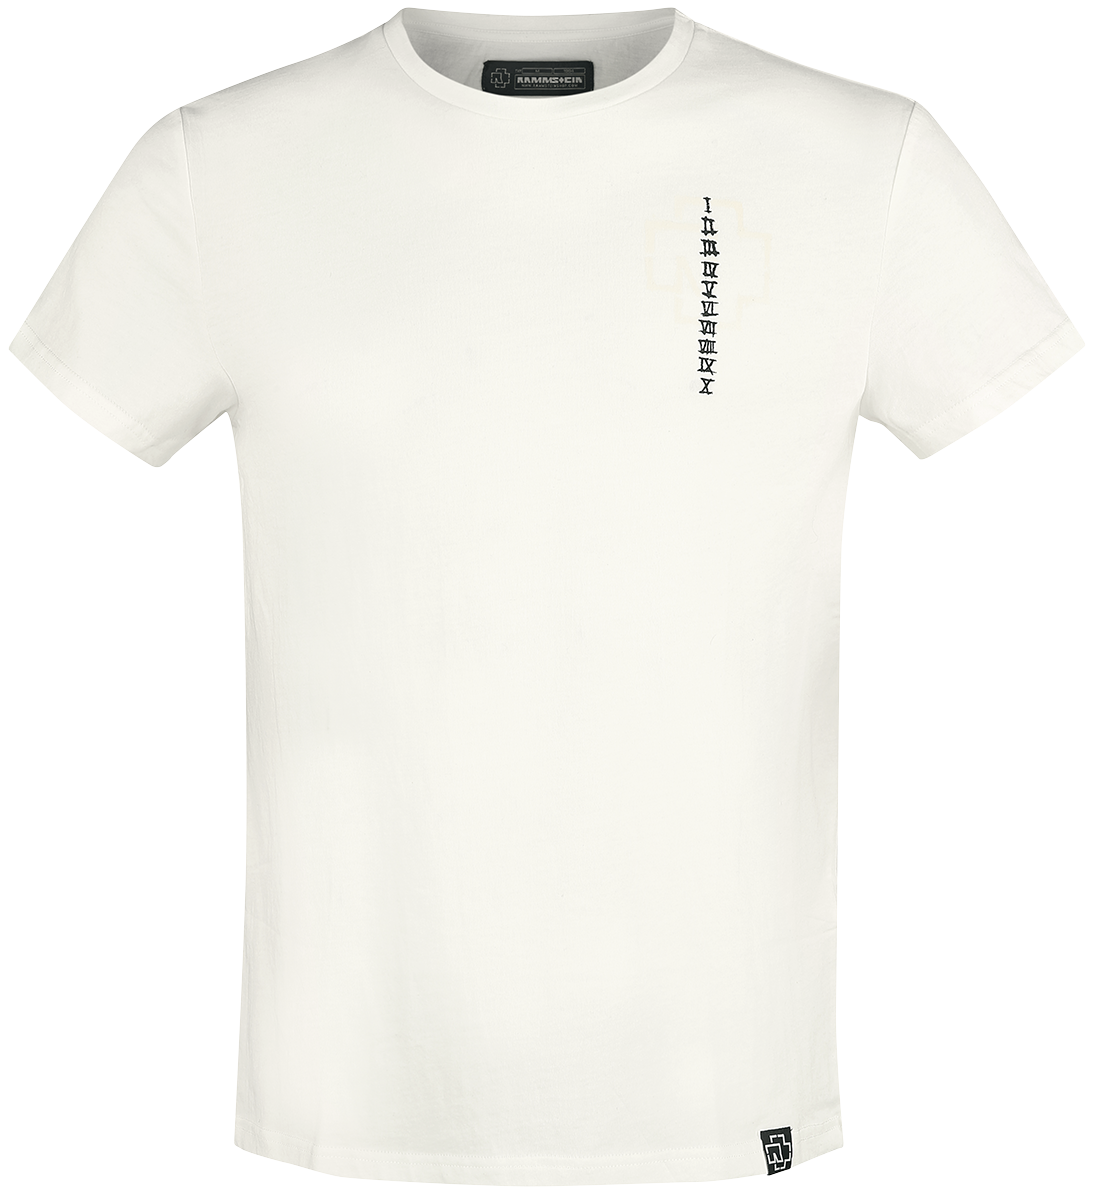 Rammstein T-Shirt - Sonne - S bis 3XL - für Männer - Größe S - weiß  - Lizenziertes Merchandise!